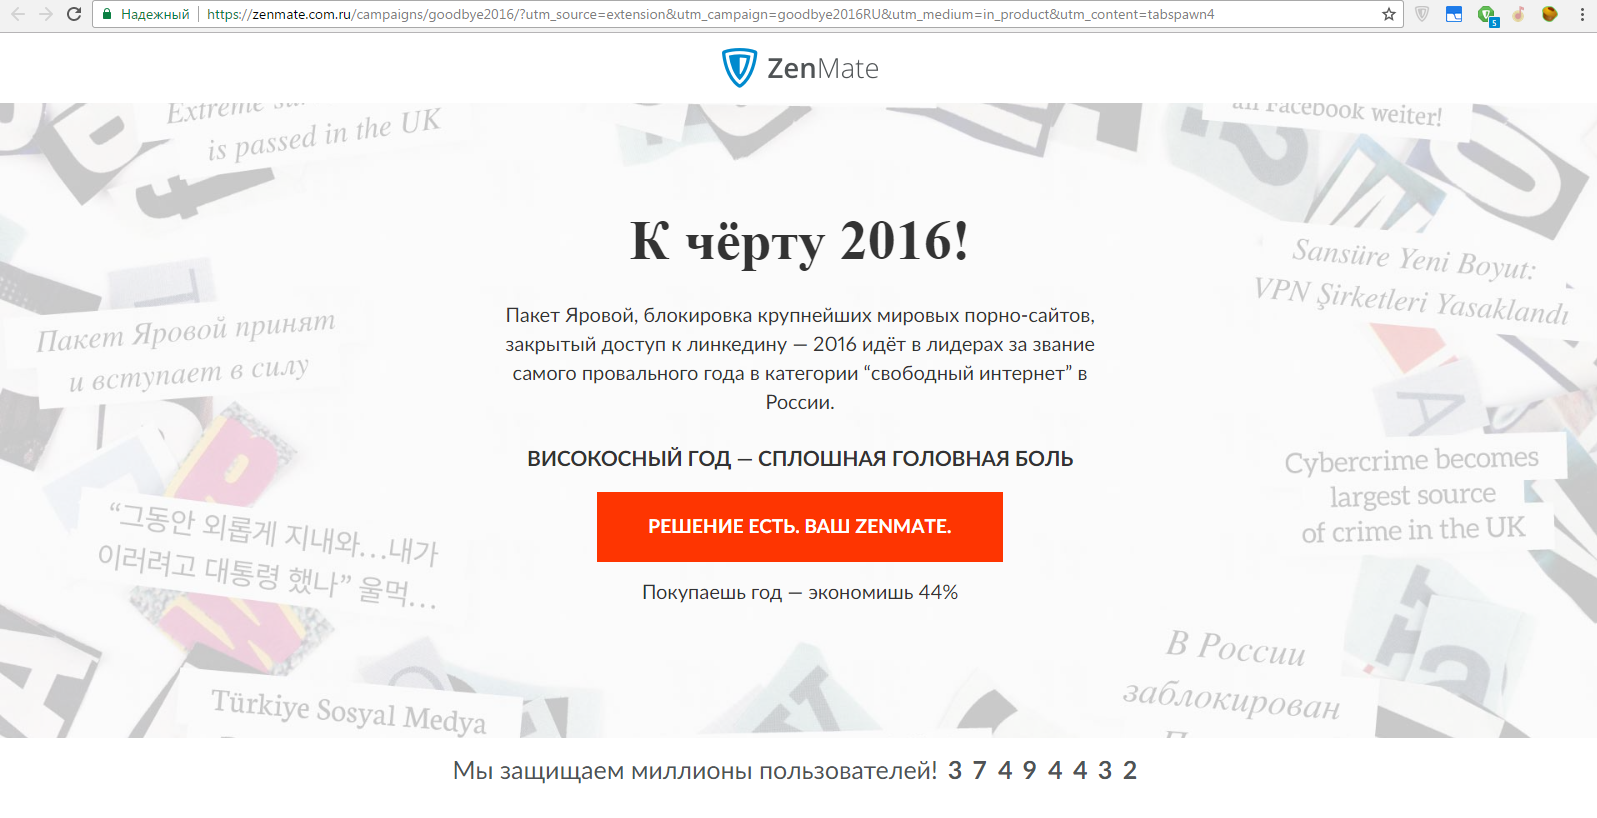 Fuck 2016! - Zenmate, Photo, Program, VPN, Leap year